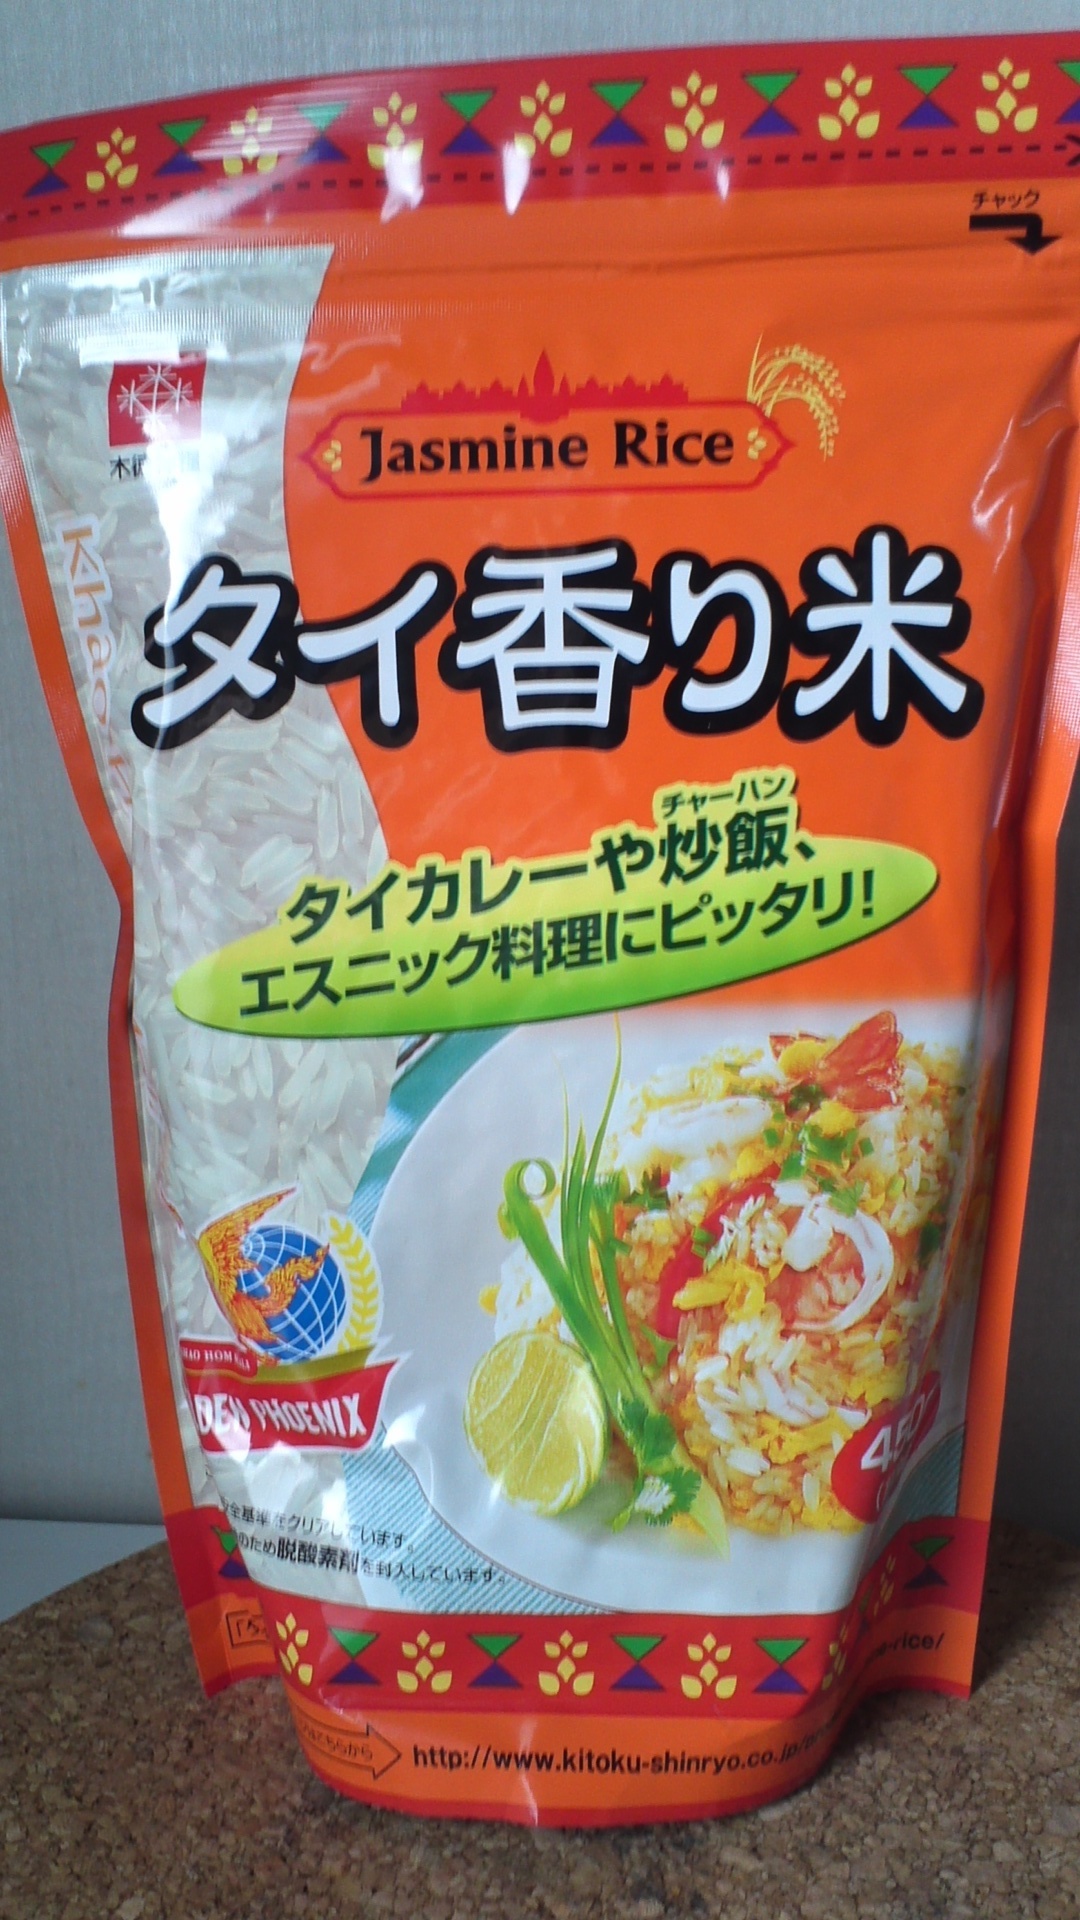 木徳神糧 タイ香り米 ジャスミンライス 普通のタイ米とは別格の高級な味 レビューホーム